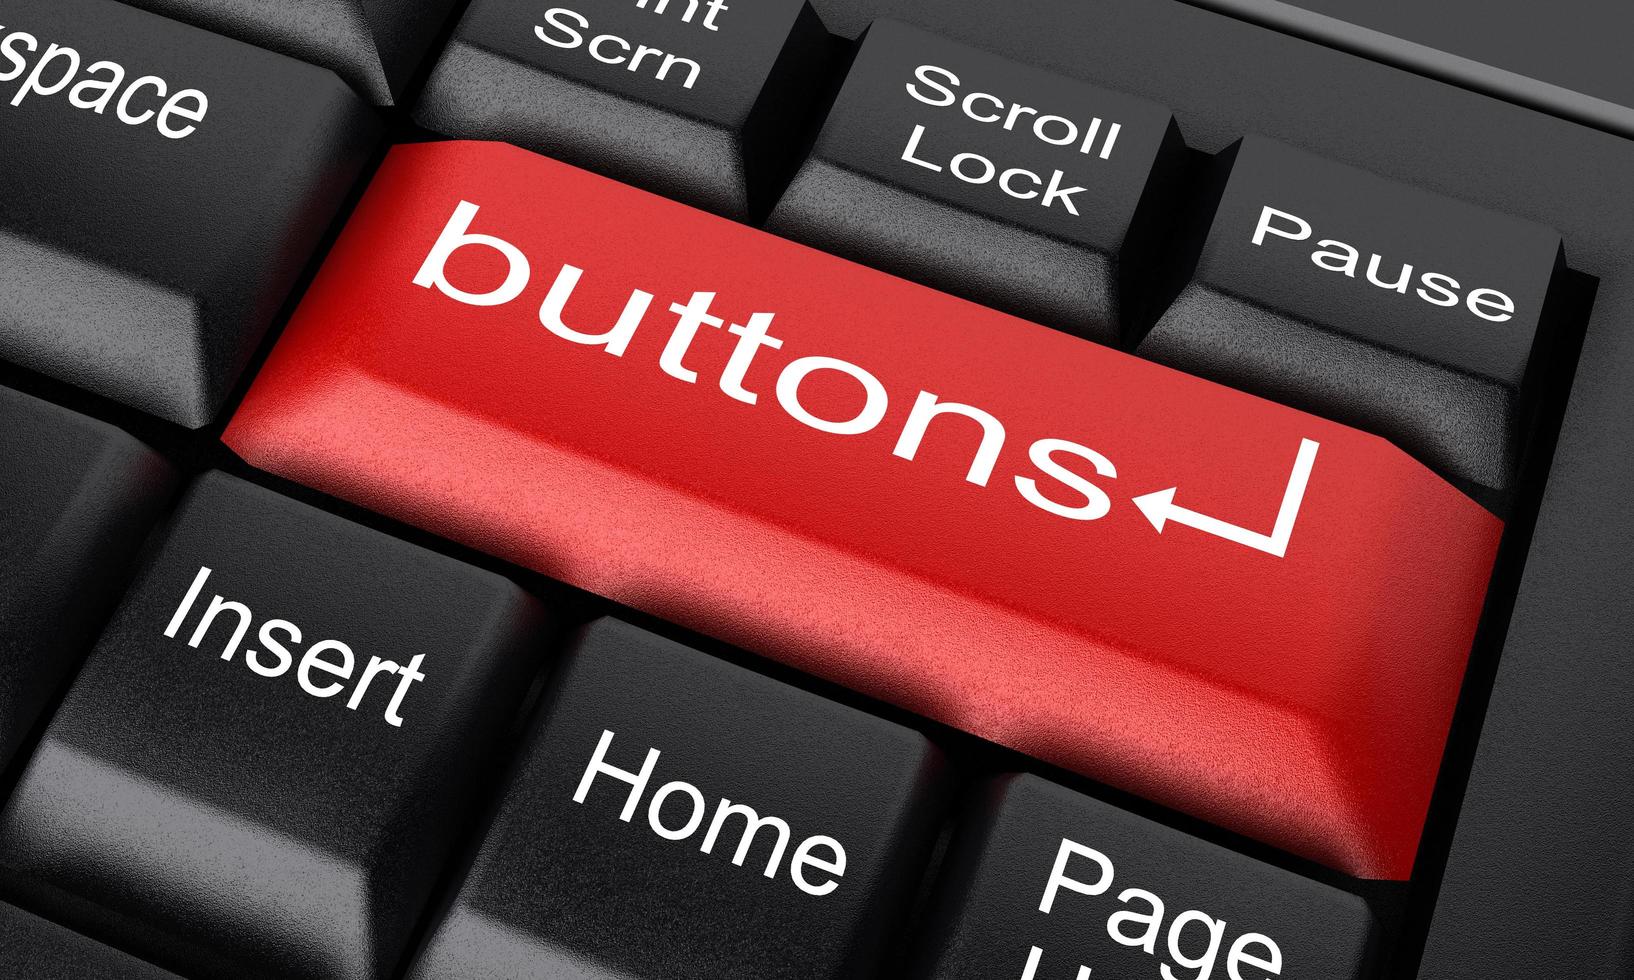 palabra de botones en el botón rojo del teclado foto